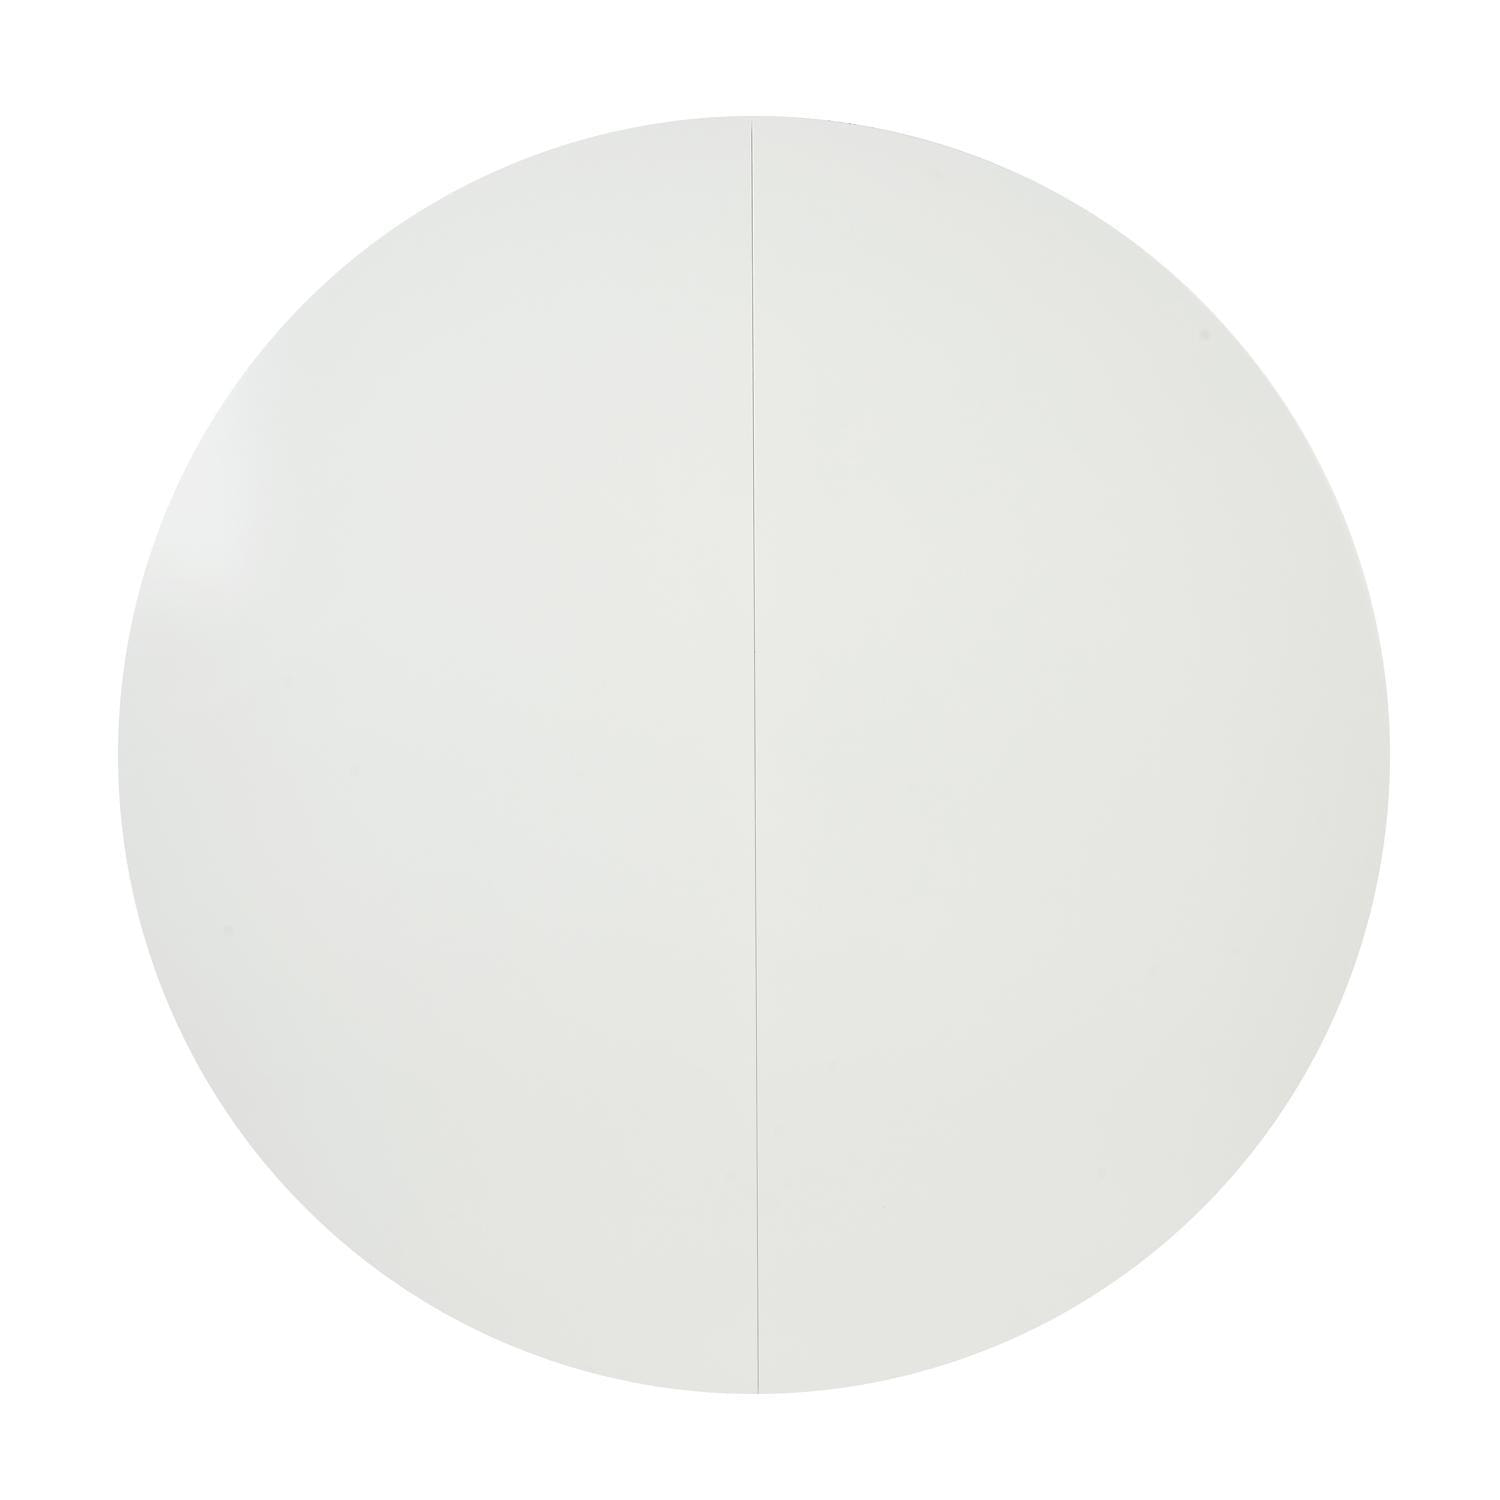 Стол круглый раскладной обеденный BOSCO (Боско) основание бук, столешница мдф, 100*75*100+30см, Белый + Коричневый